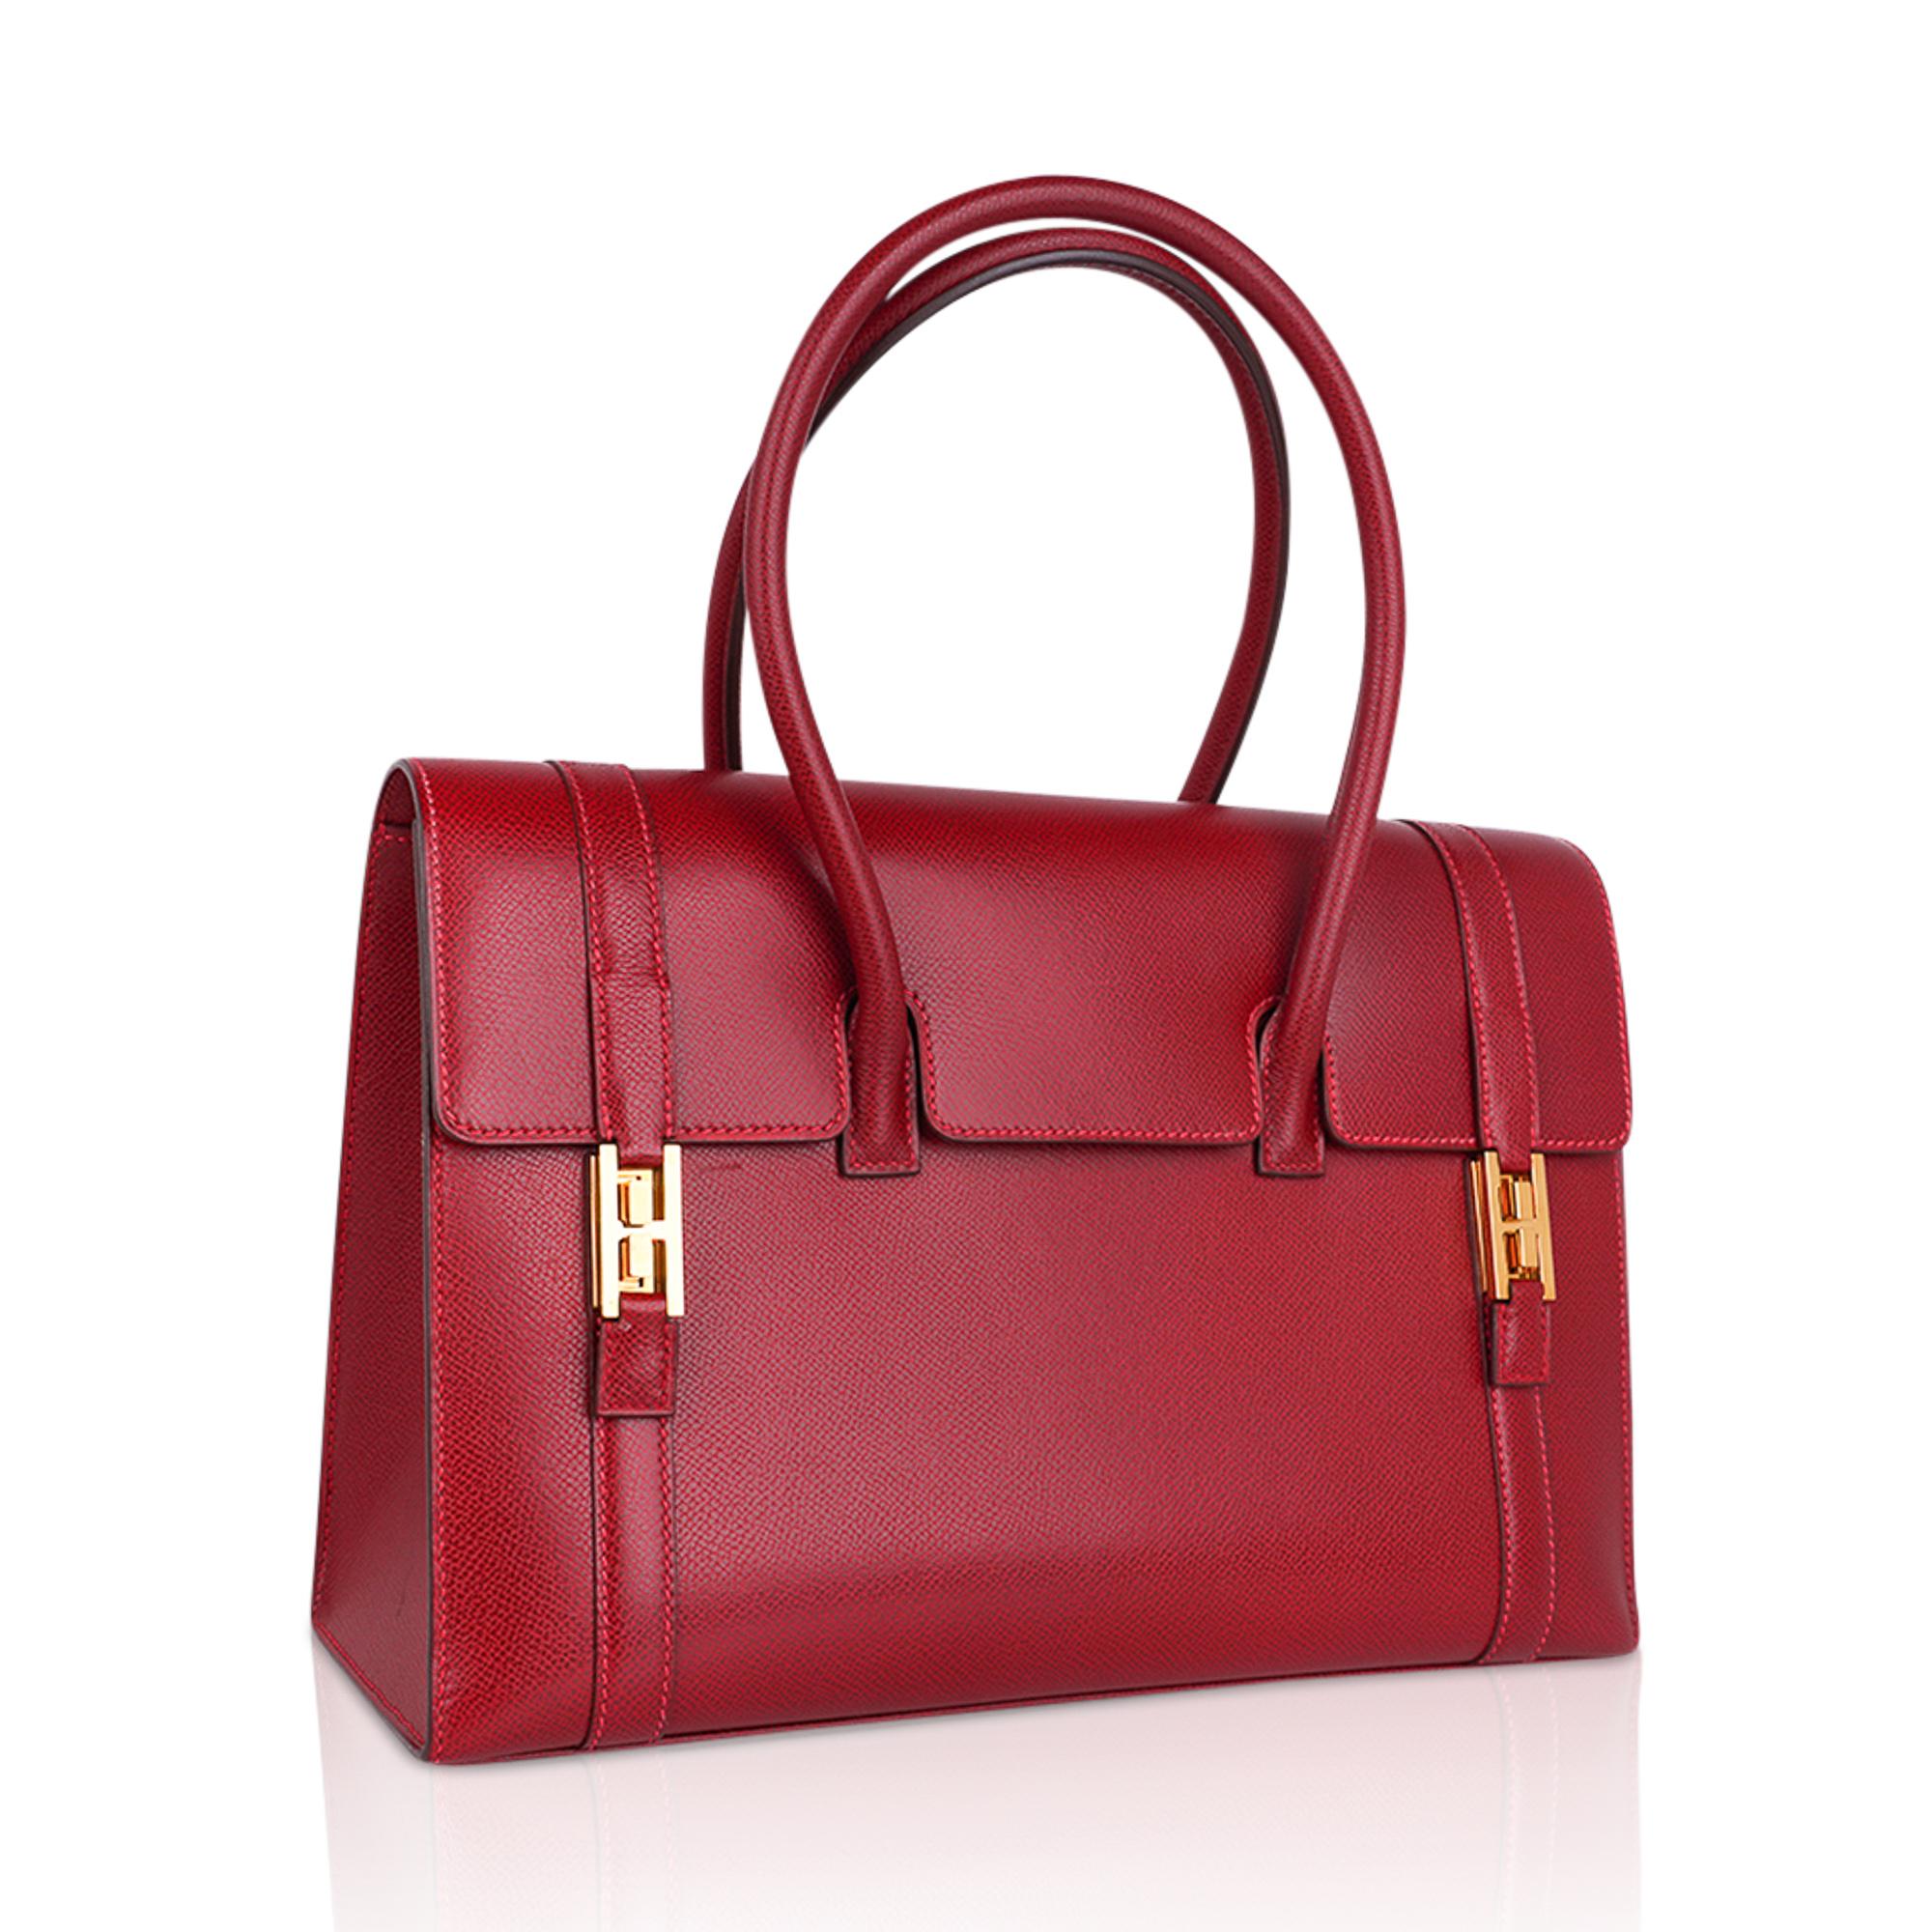 Eine der elegantesten Taschen, die Hermes je produziert hat, in einem wunderschönen Hermes-Rot!
Diese Rouge Vif-Schönheit ist die Originalproduktion der Hermes Drag Bag. 
Dieses begehrte Rot wird nicht produziert und ist mit ihrem rosa Oberstich